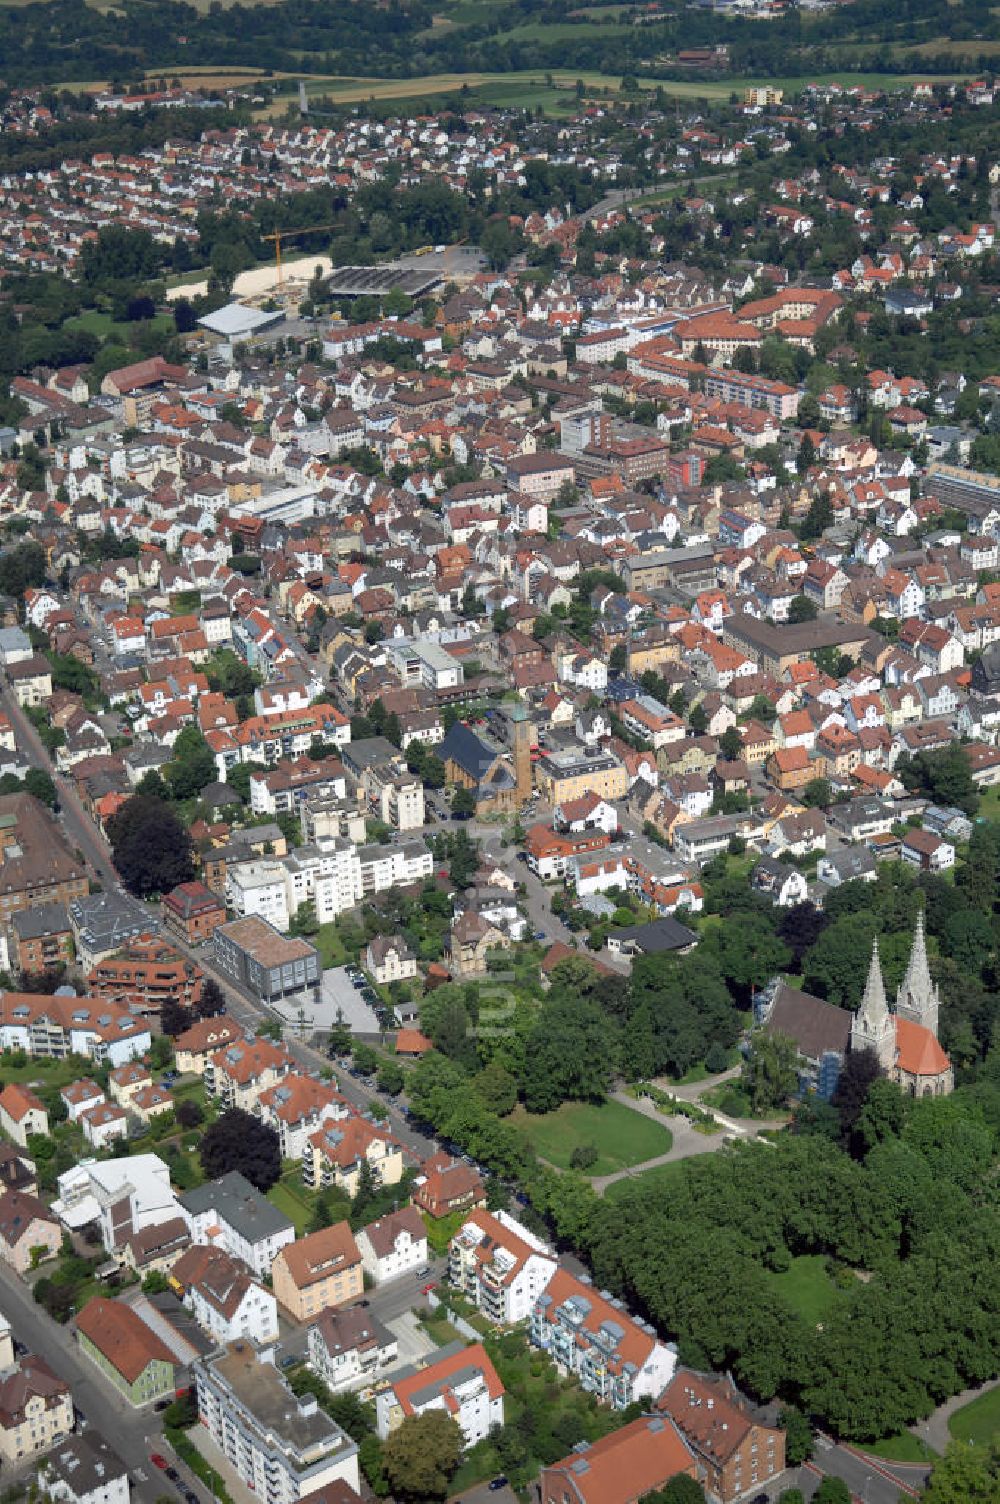 Luftbild Göppingen - Blick auf die Stadt Göppingen